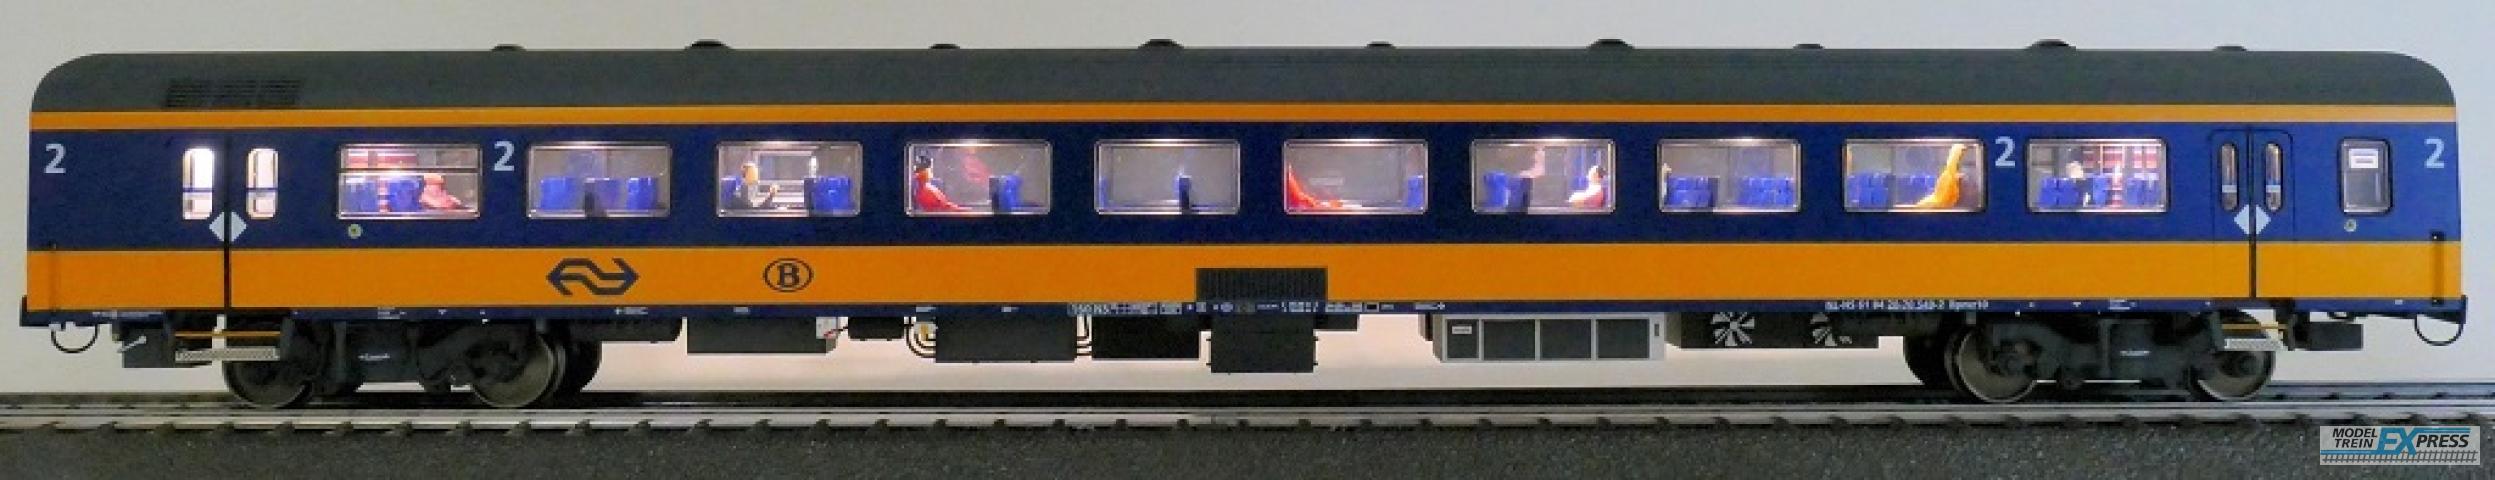 Exact-train 11161 NS ICRm (Amsterdam - Brussel) Reisezugwagen Bpmz10 ( Farbe Gelb / Blau) mit Beleuchtung und Figuren, Ep. VI